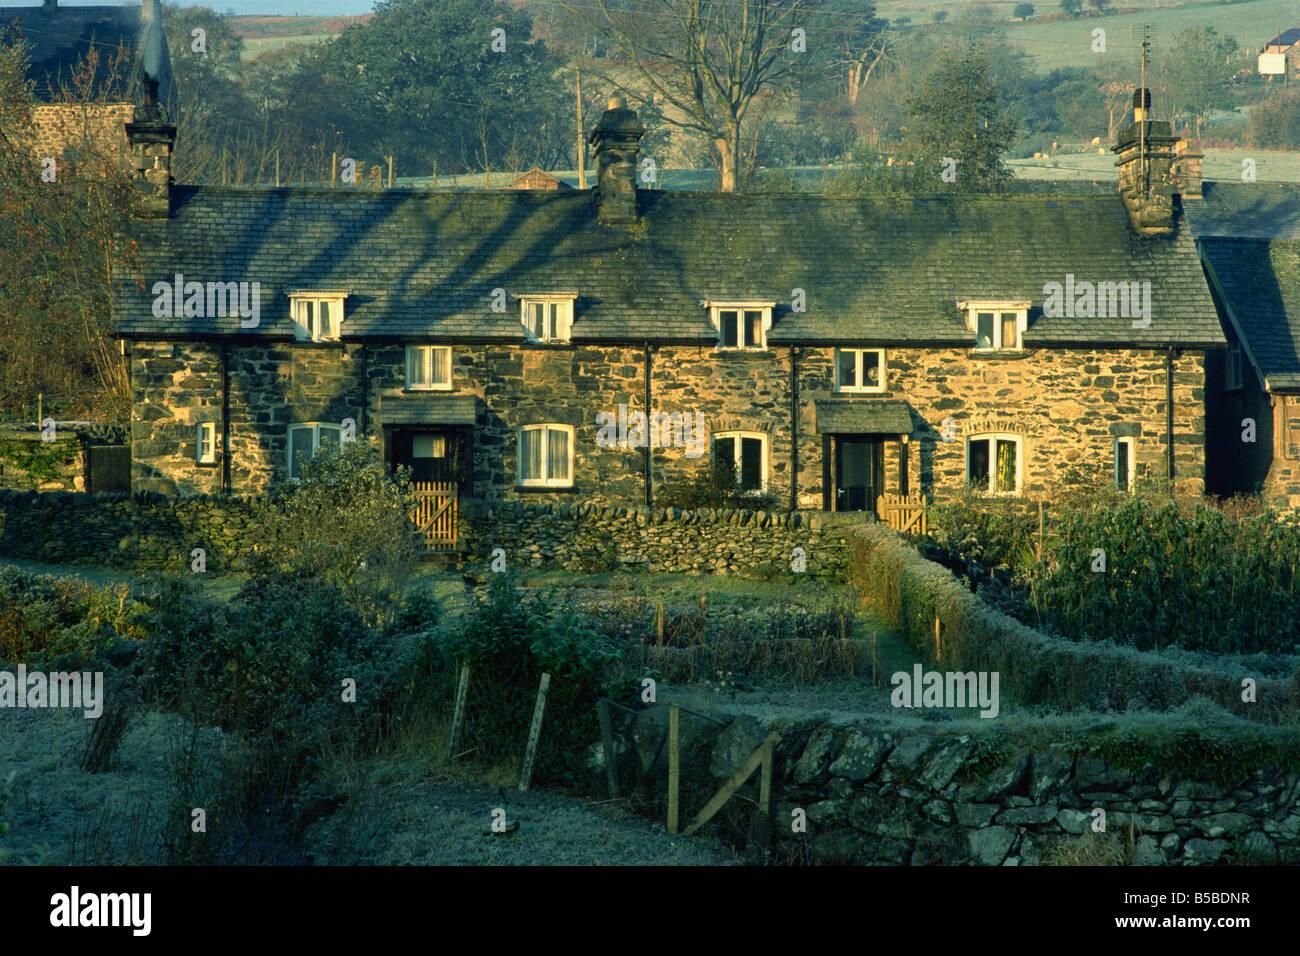 Typisch walisische Häuschen Ysbyty Ifan Gwynedd Wales Großbritannien Europa Stockfoto